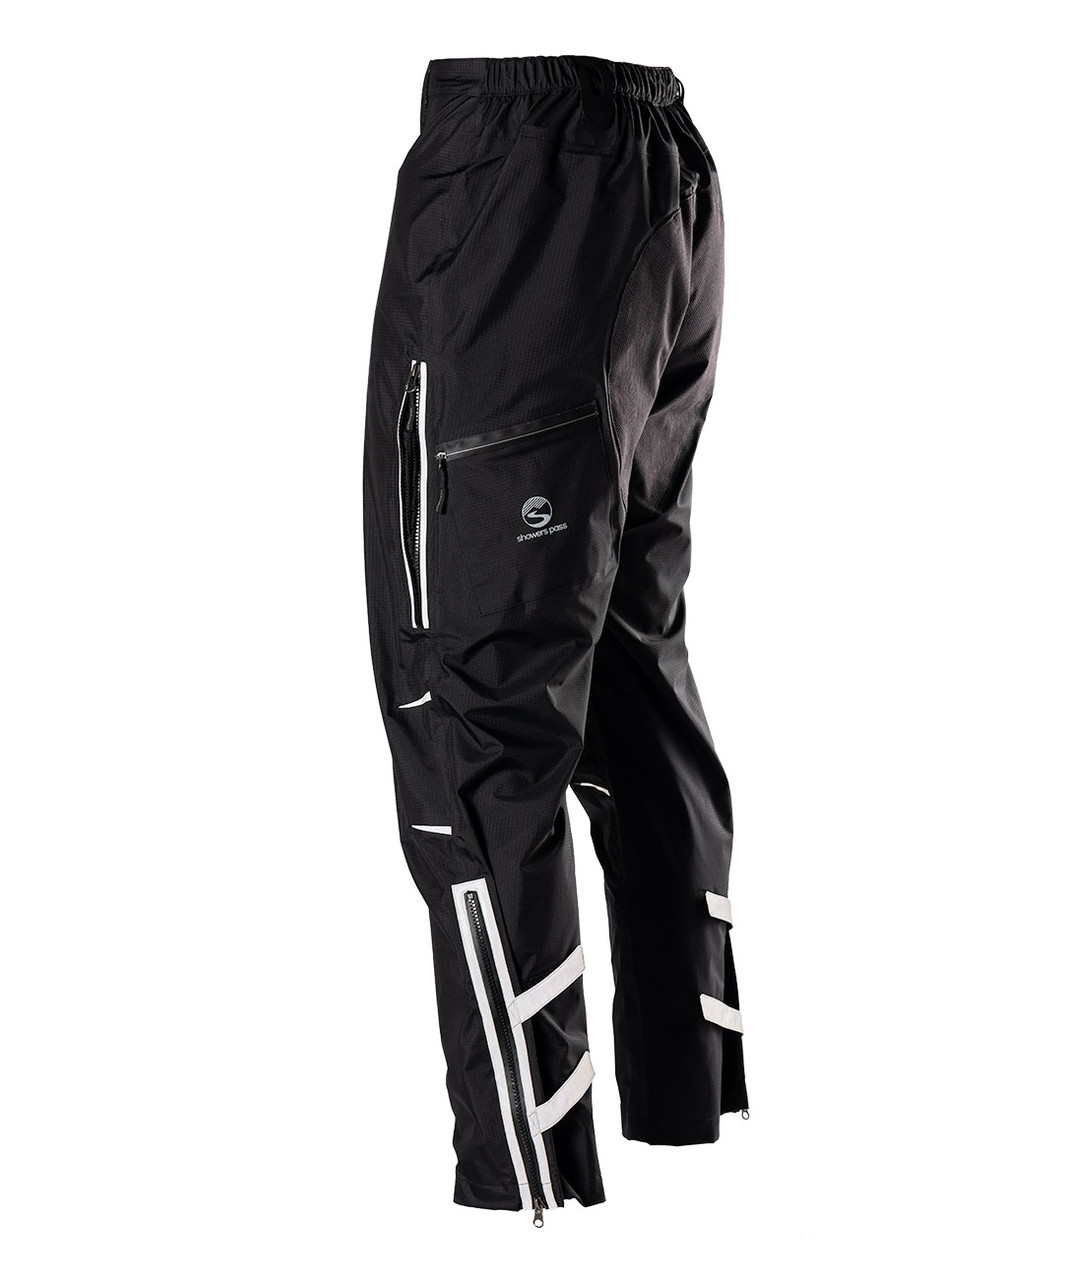 Showers Pass Men's 3 Layer Waterproof Transit Rain Pants (Black - Small) :  : Fashion